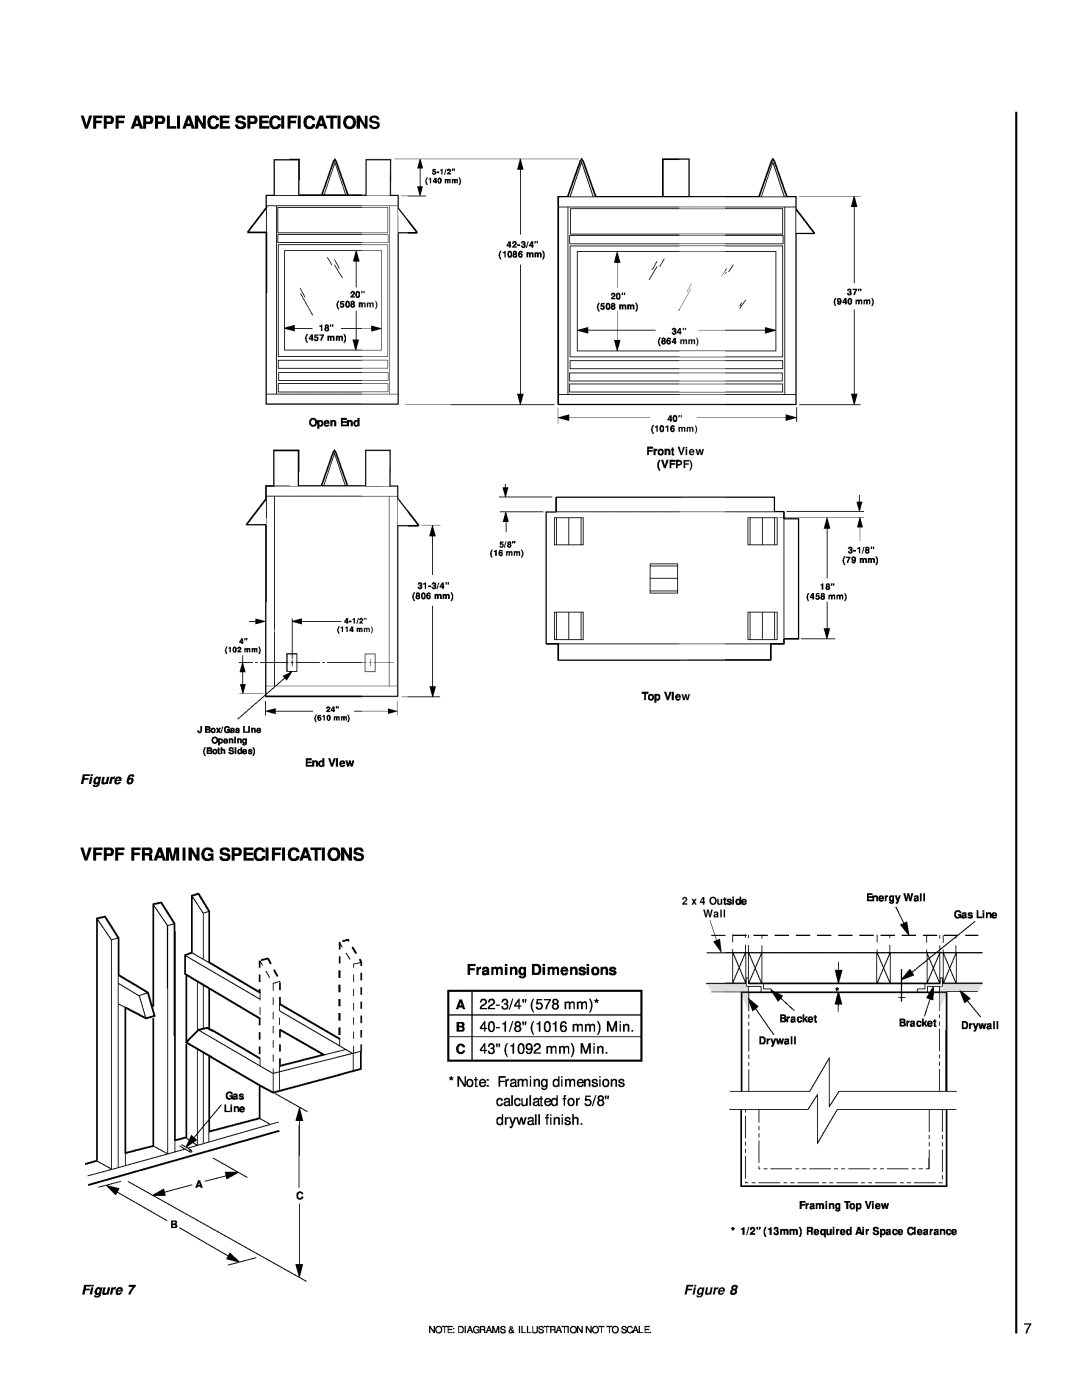 TOA Electronics VFST-CMN-2 dimensions Vfpf Appliance Specifications, Vfpf Framing Specifications 